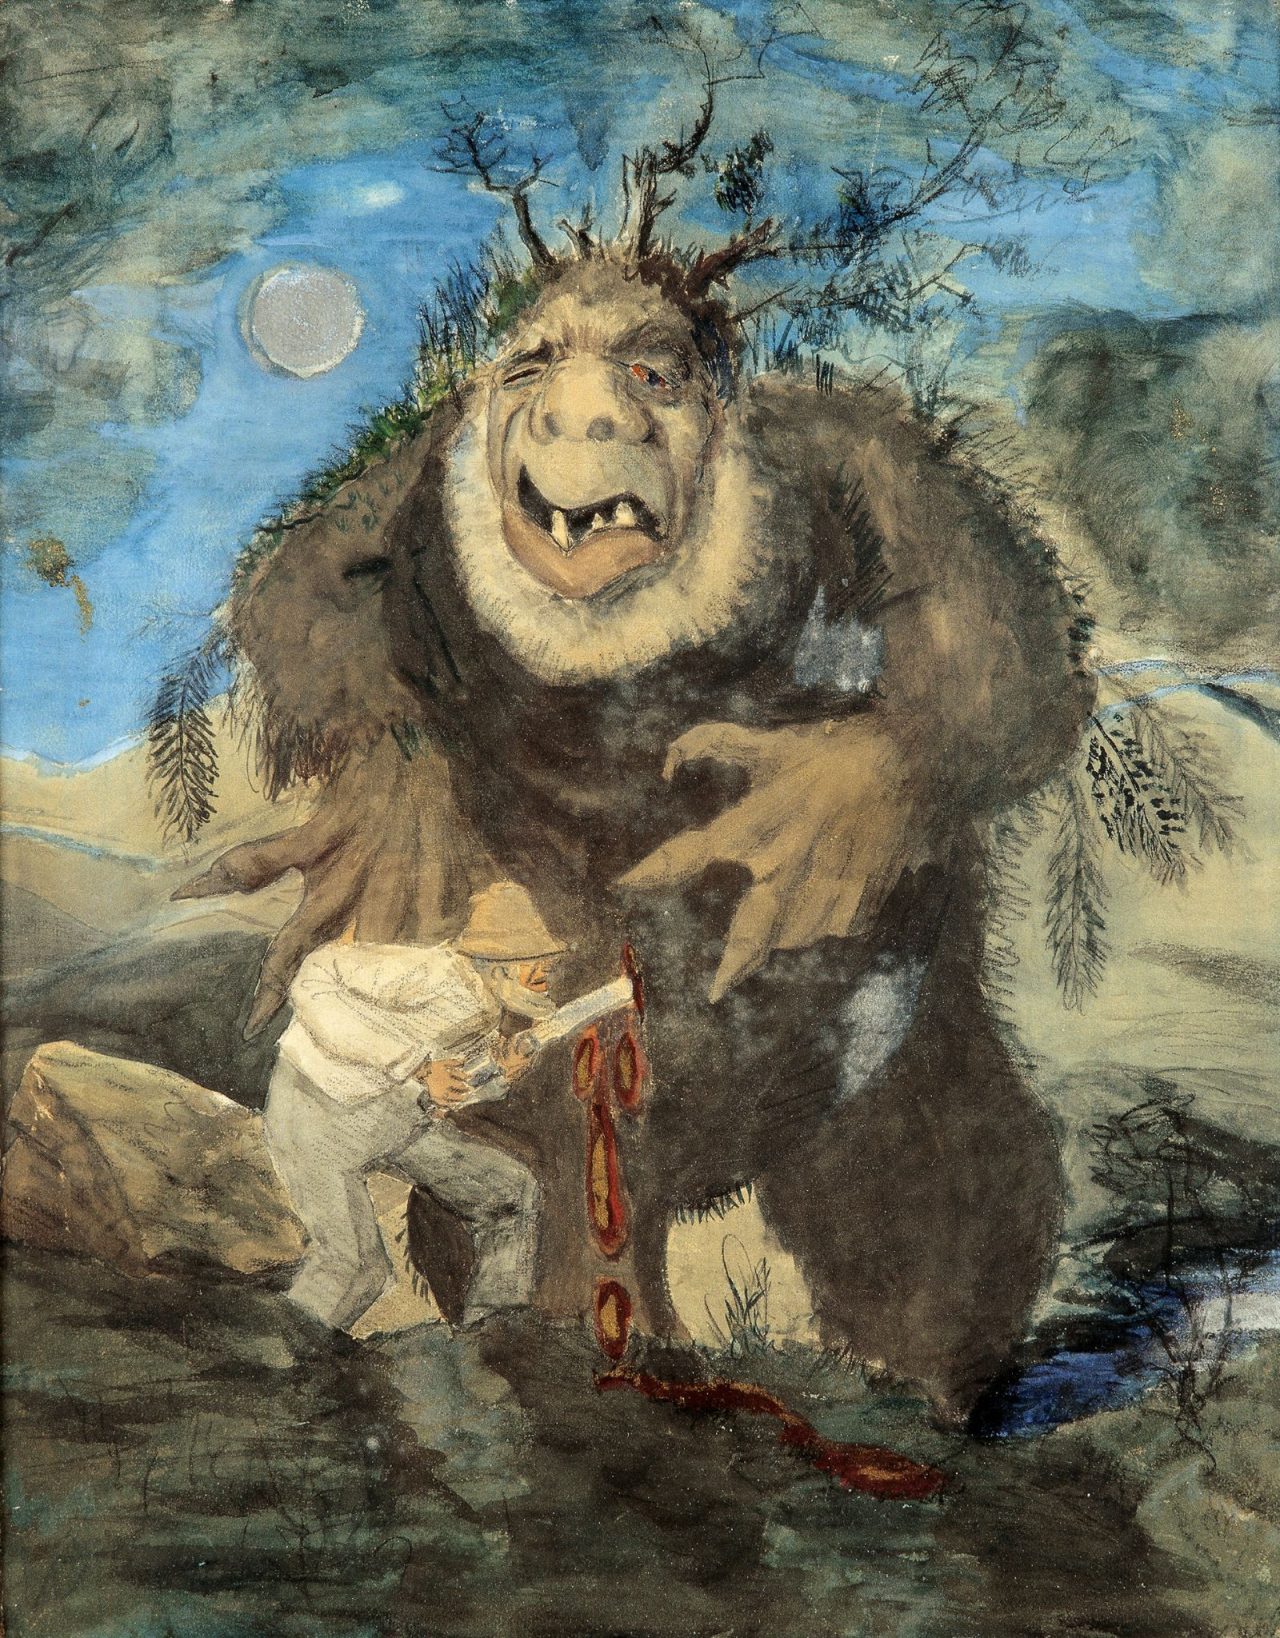 Theodor Kittlesen, trolls, monsters, painting, art, folklore